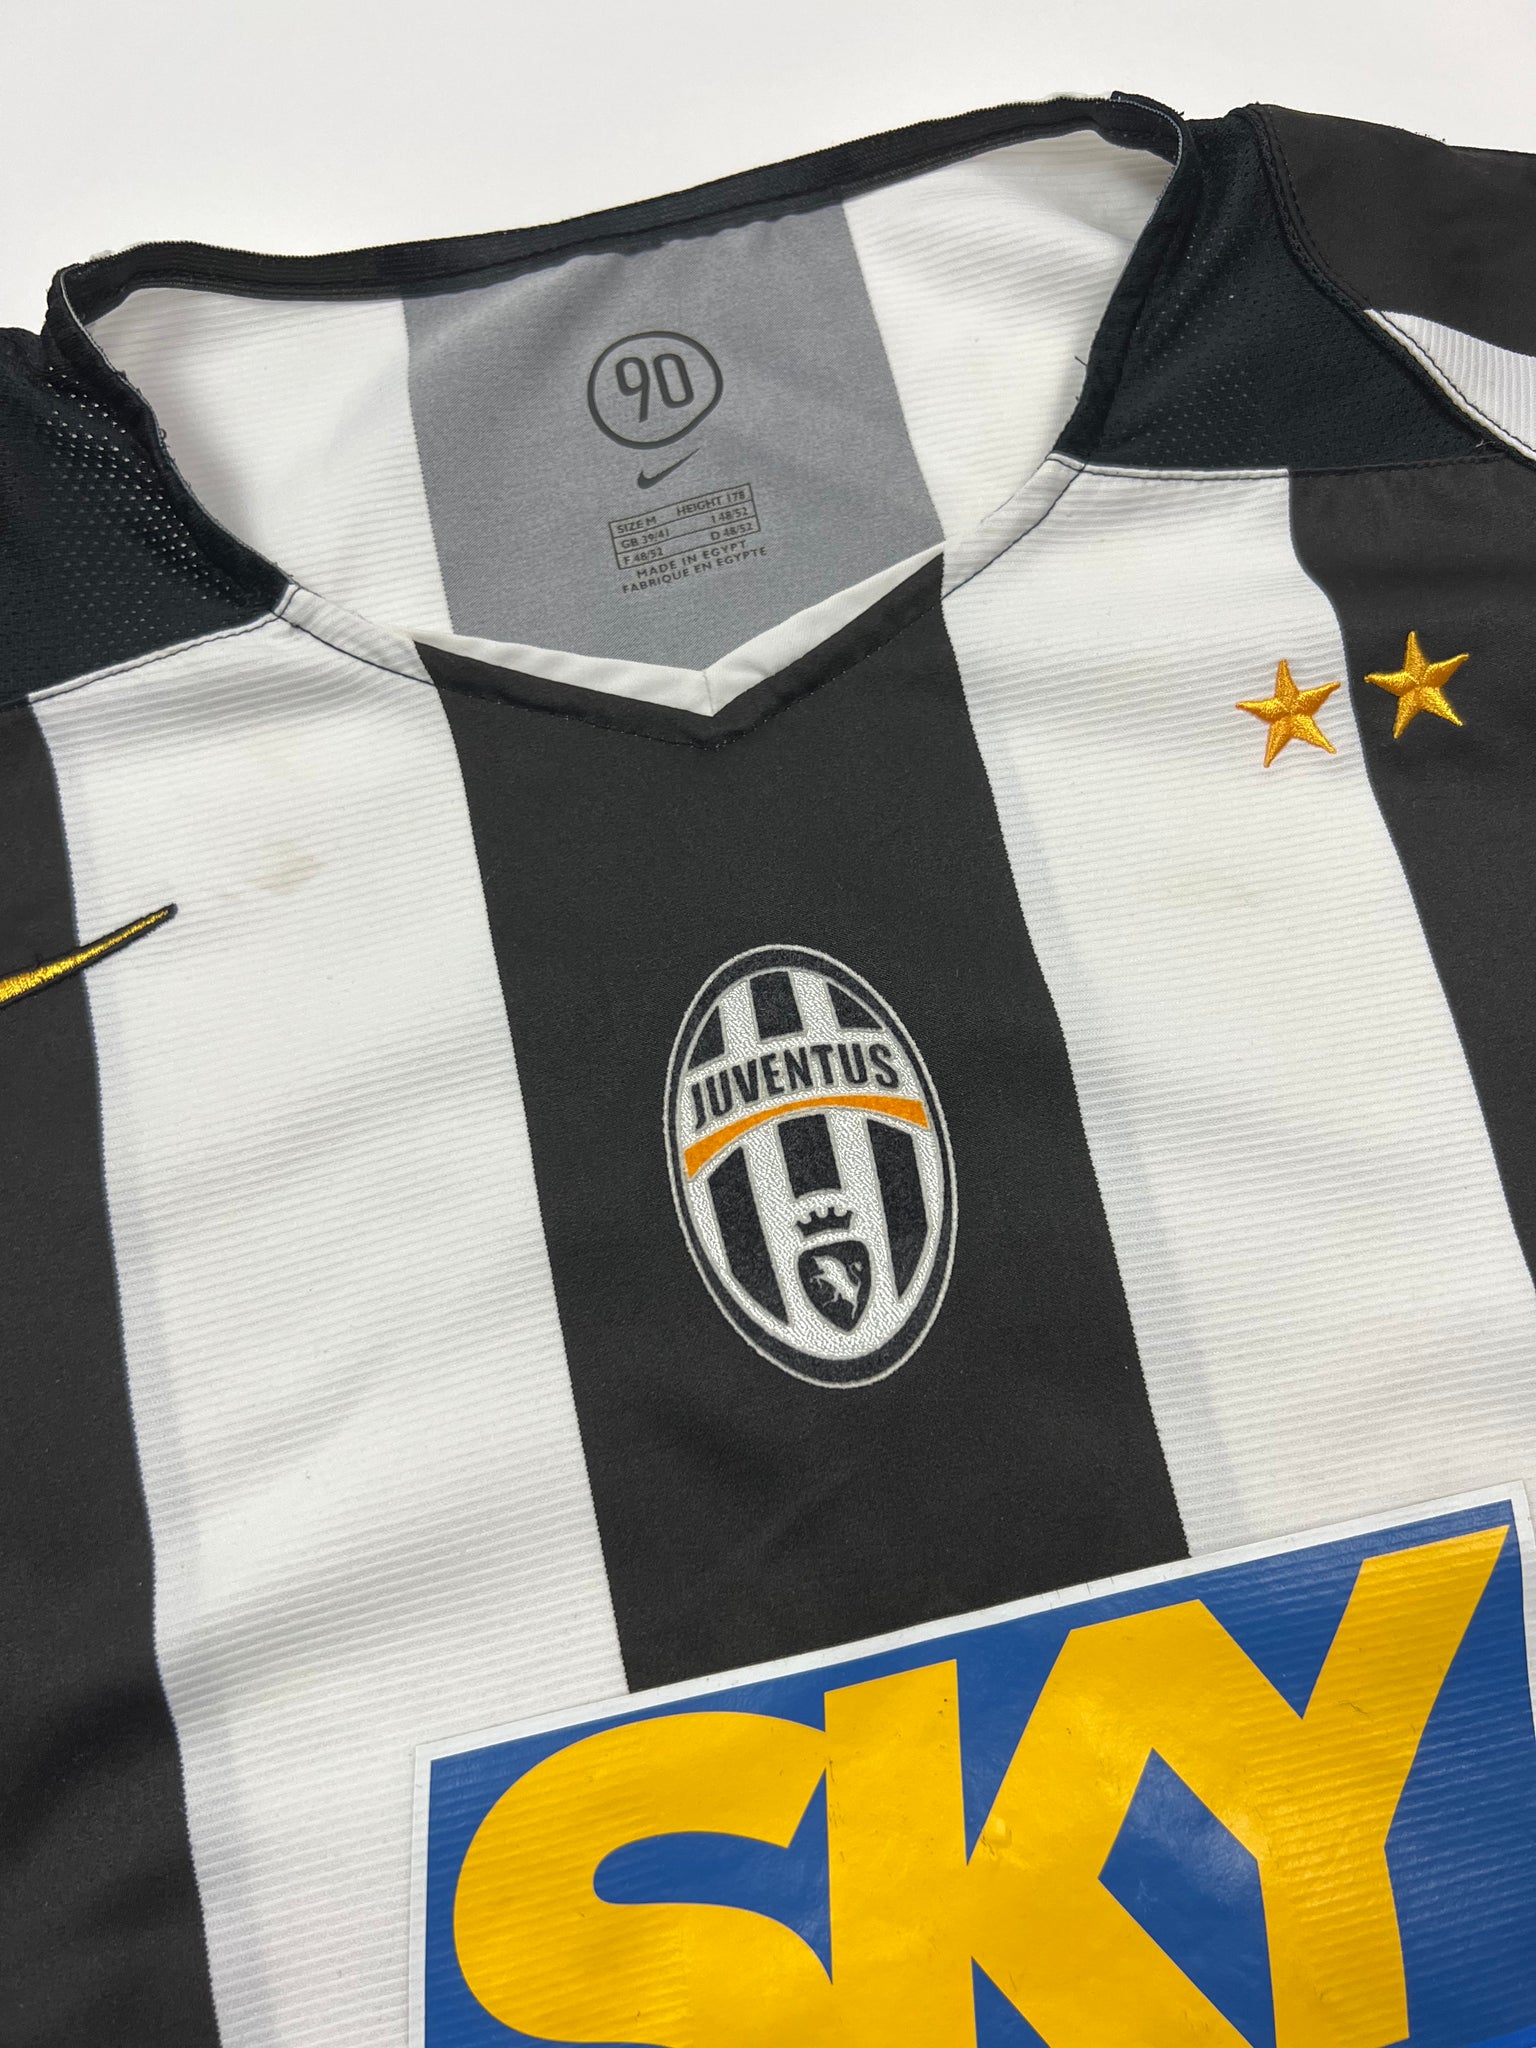 Nike Juventus Jersey 2004/05 (M)